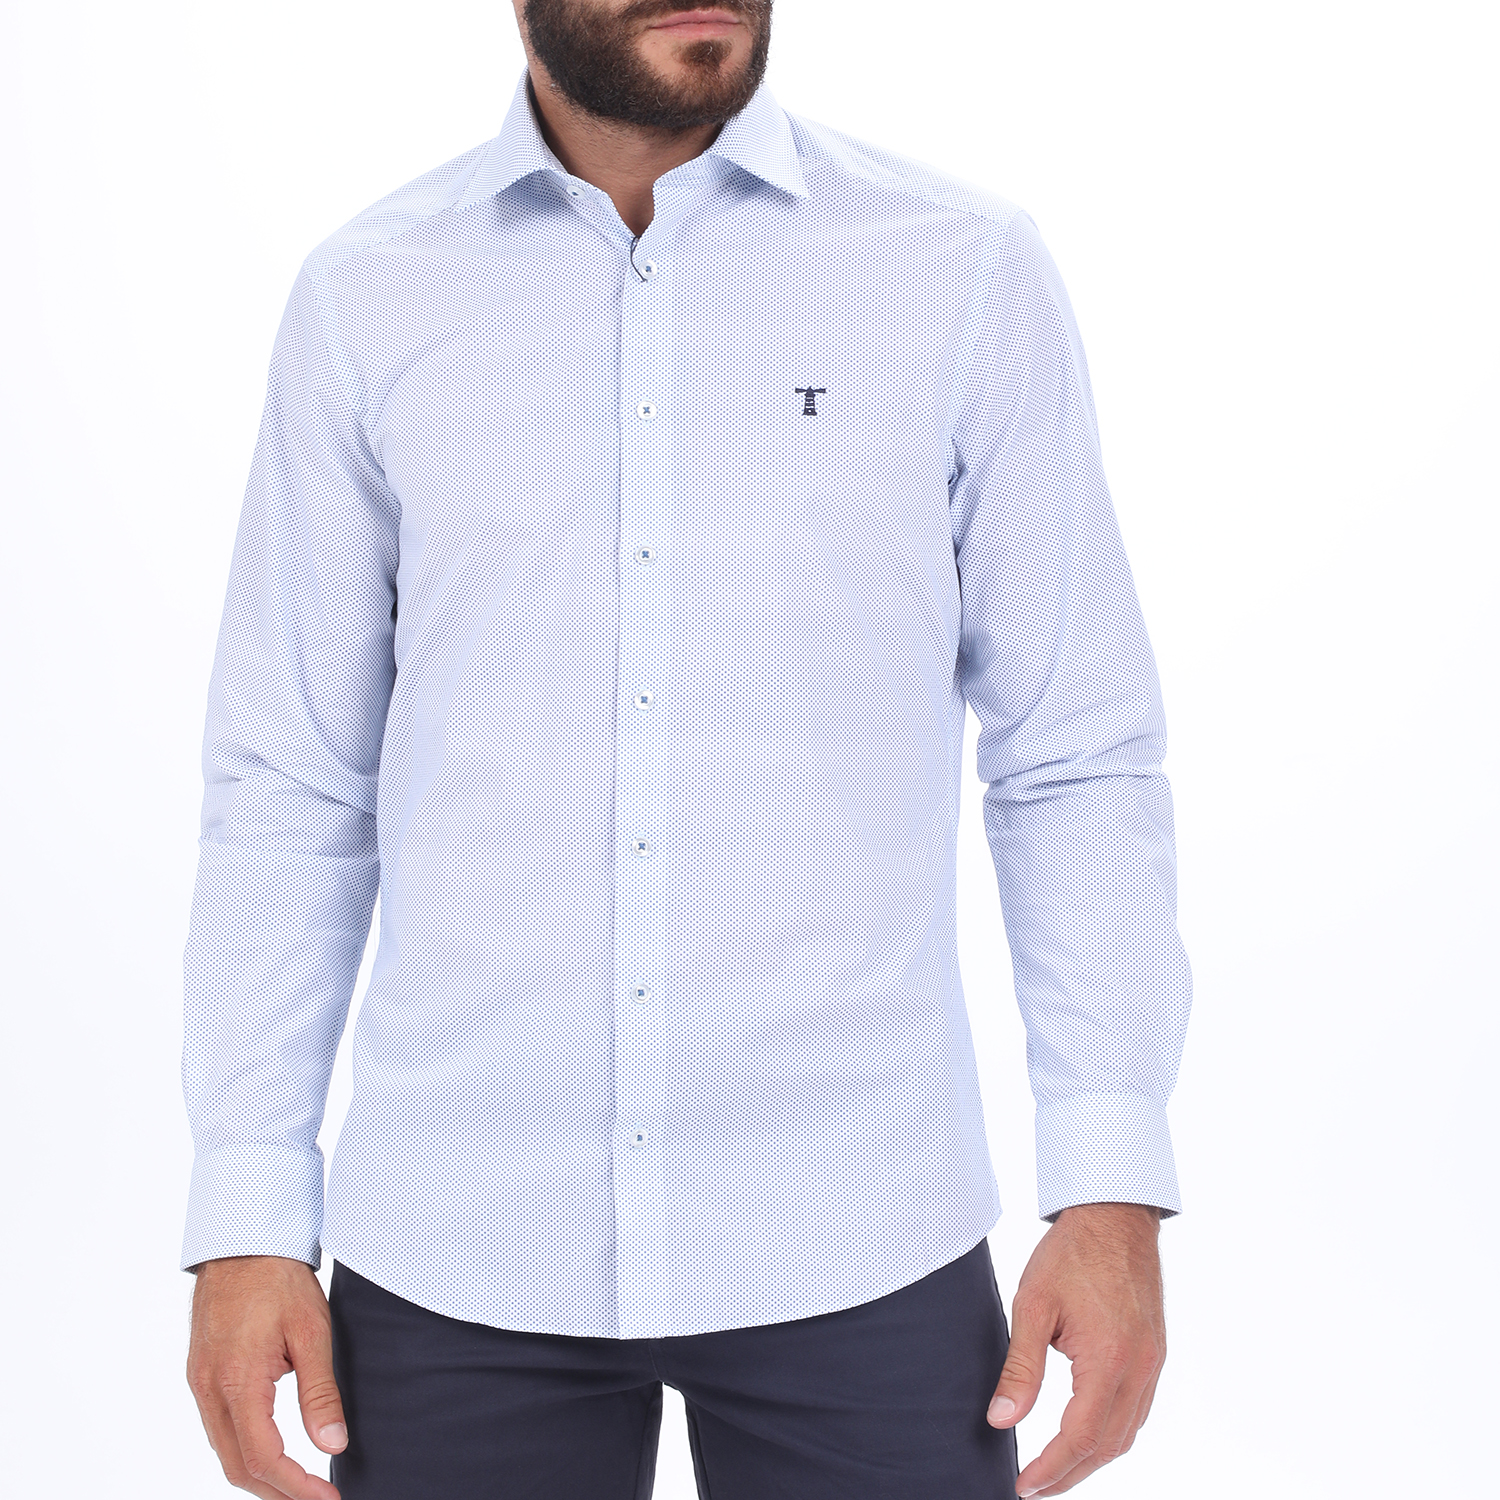 Ανδρικά/Ρούχα/Πουκάμισα/Μακρυμάνικα HAMPTONS - Ανδρικό πουκάμισο HAMPTONS MICRODESIGN λευκό μπλε